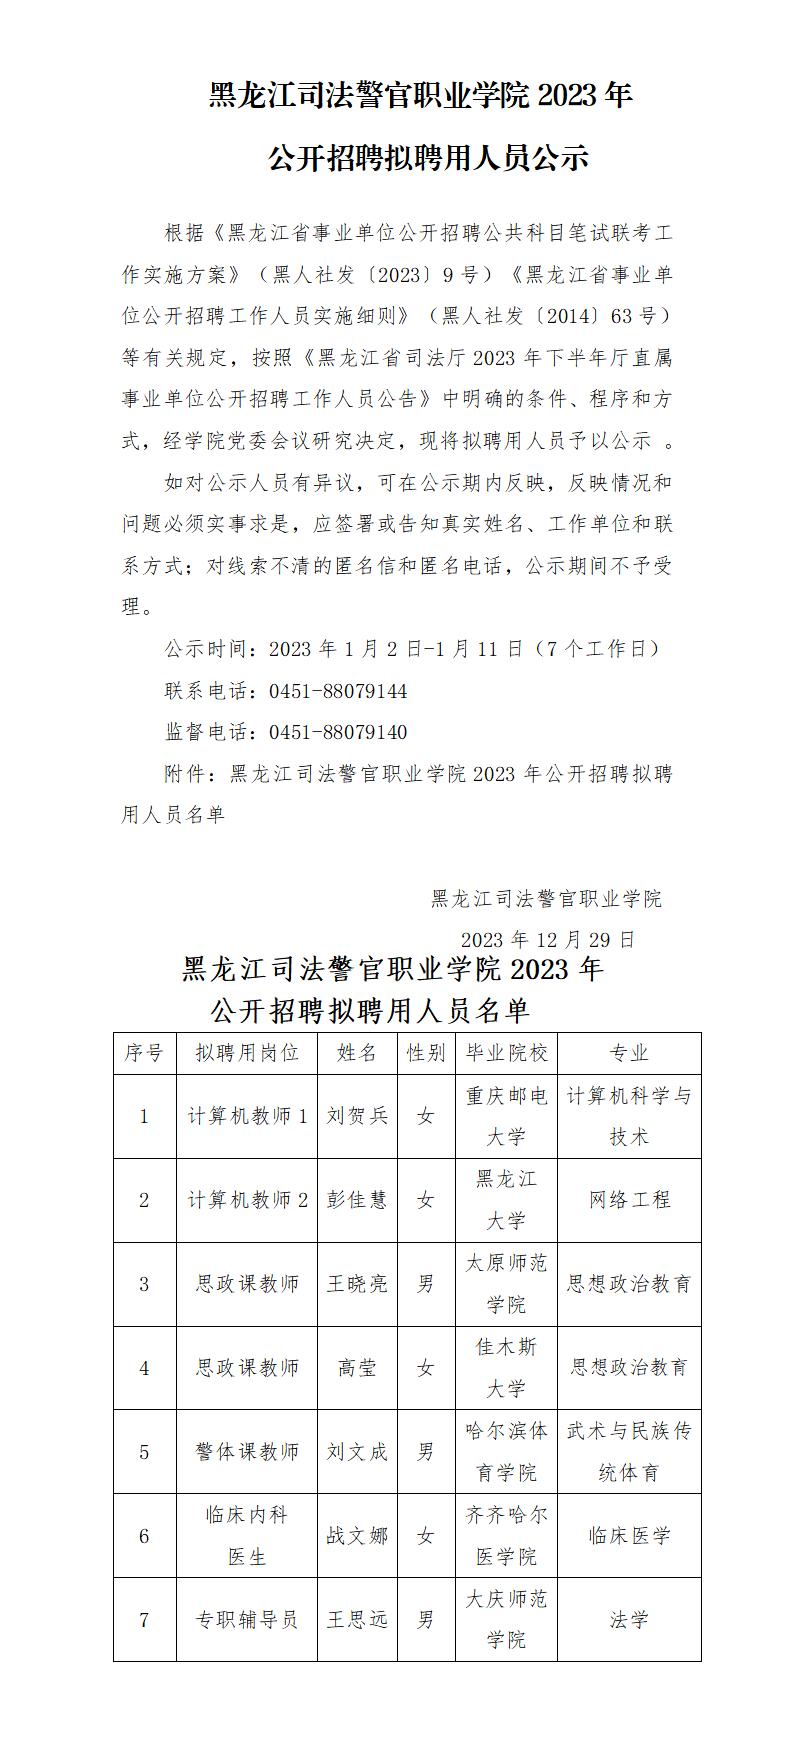 黑龙江司法警官职业学院2023年公开招聘拟聘用人员公示_01.jpg